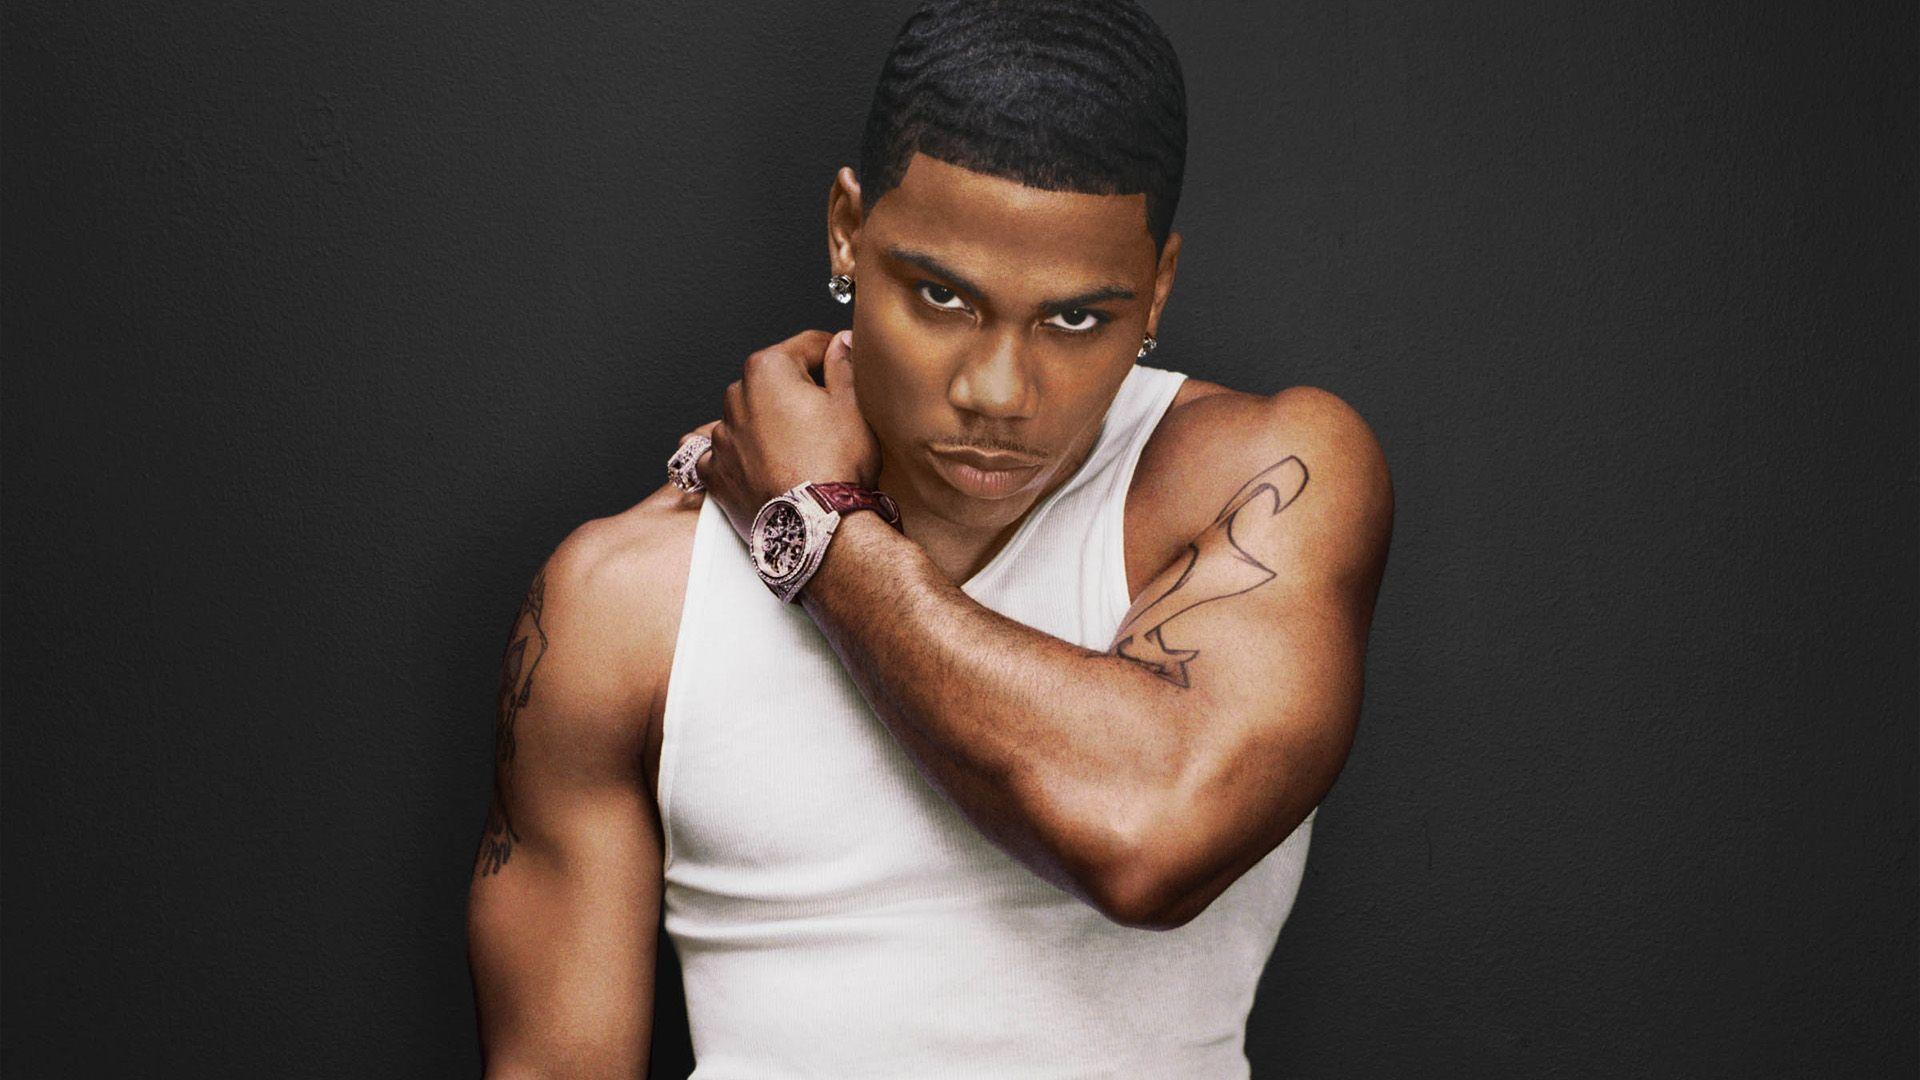 Nelly Rapper wallpaper